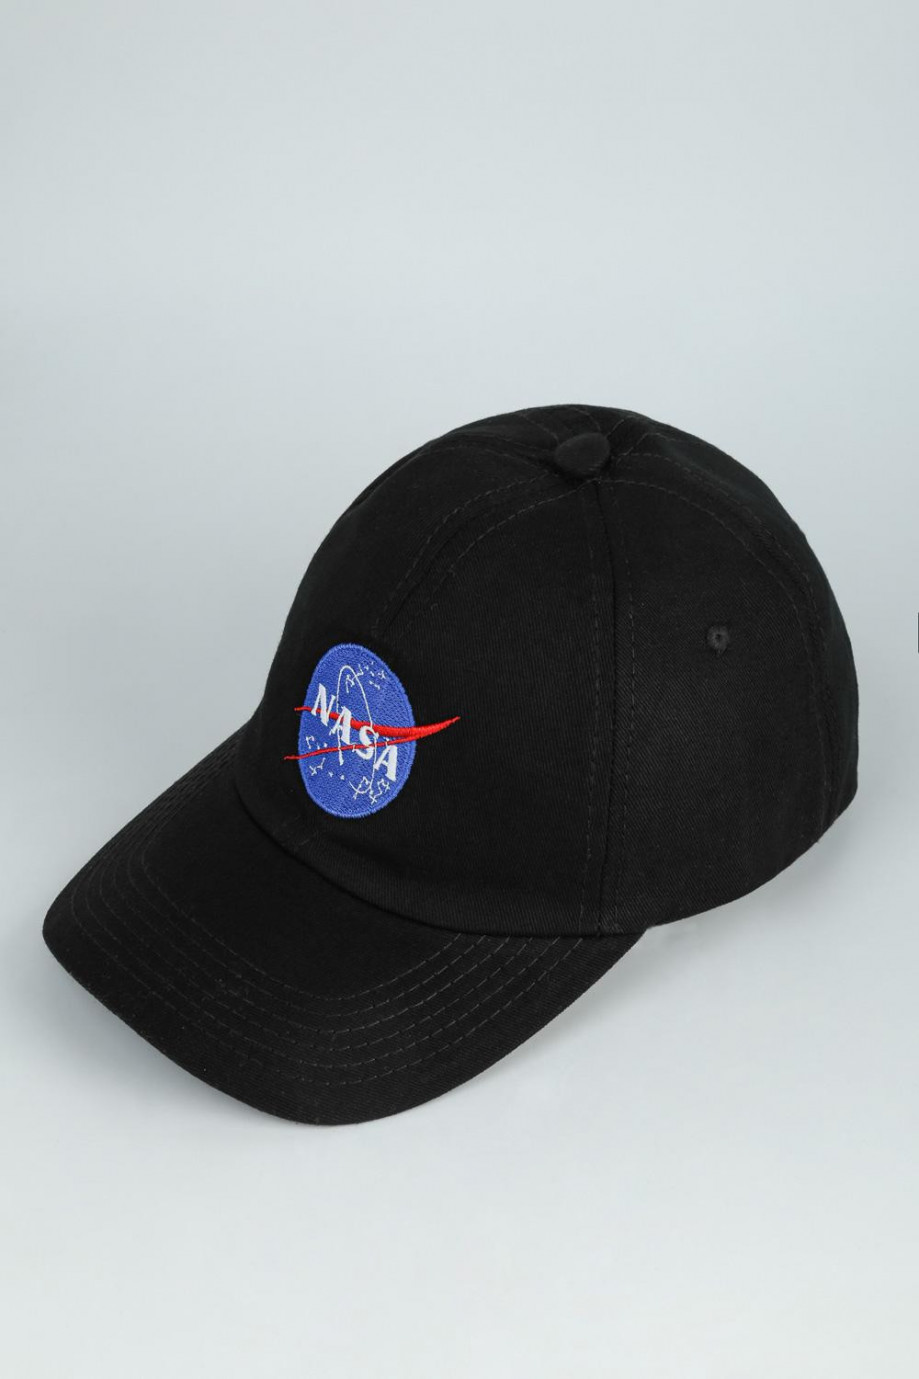 Cachucha beisbolera negra con logo de NASA bordado en frente